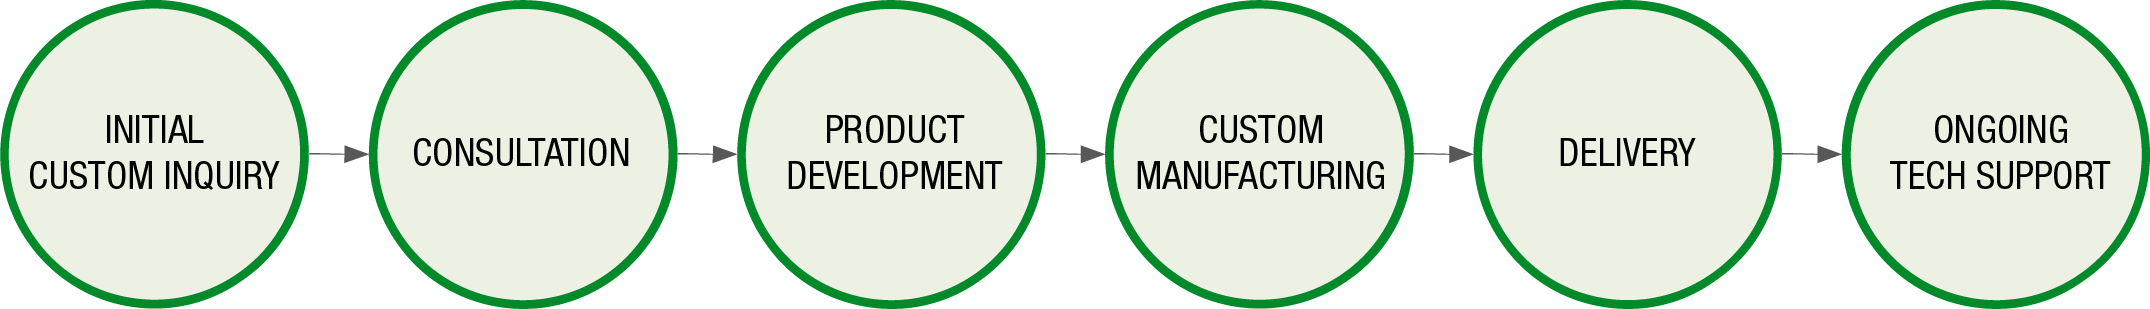 Custom Manufacturing Workflow